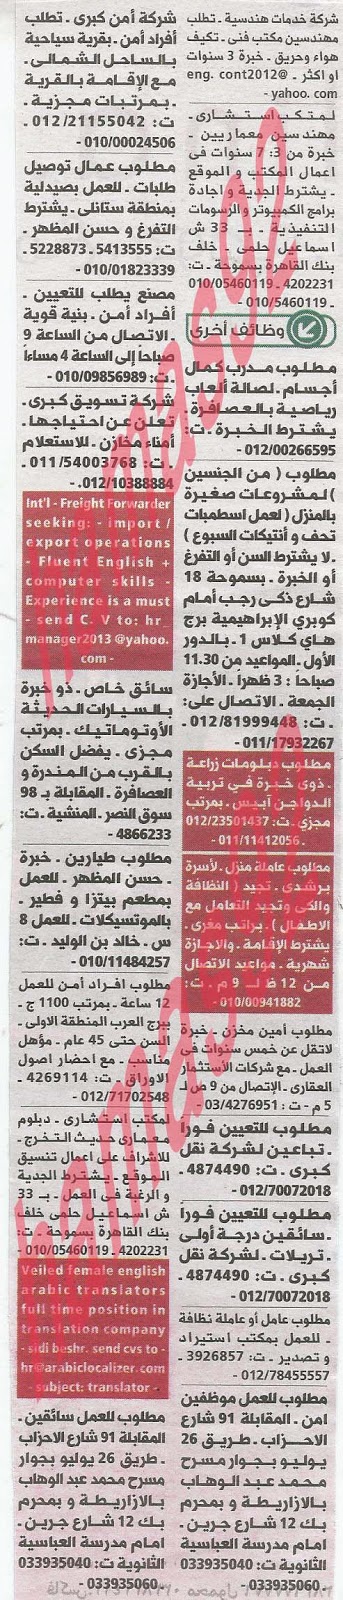 وظائف خالية من جريدة الوسيط الاسكندرية الثلاثاء 11-06-2013 %D9%88+%D8%B3+%D8%B3+1